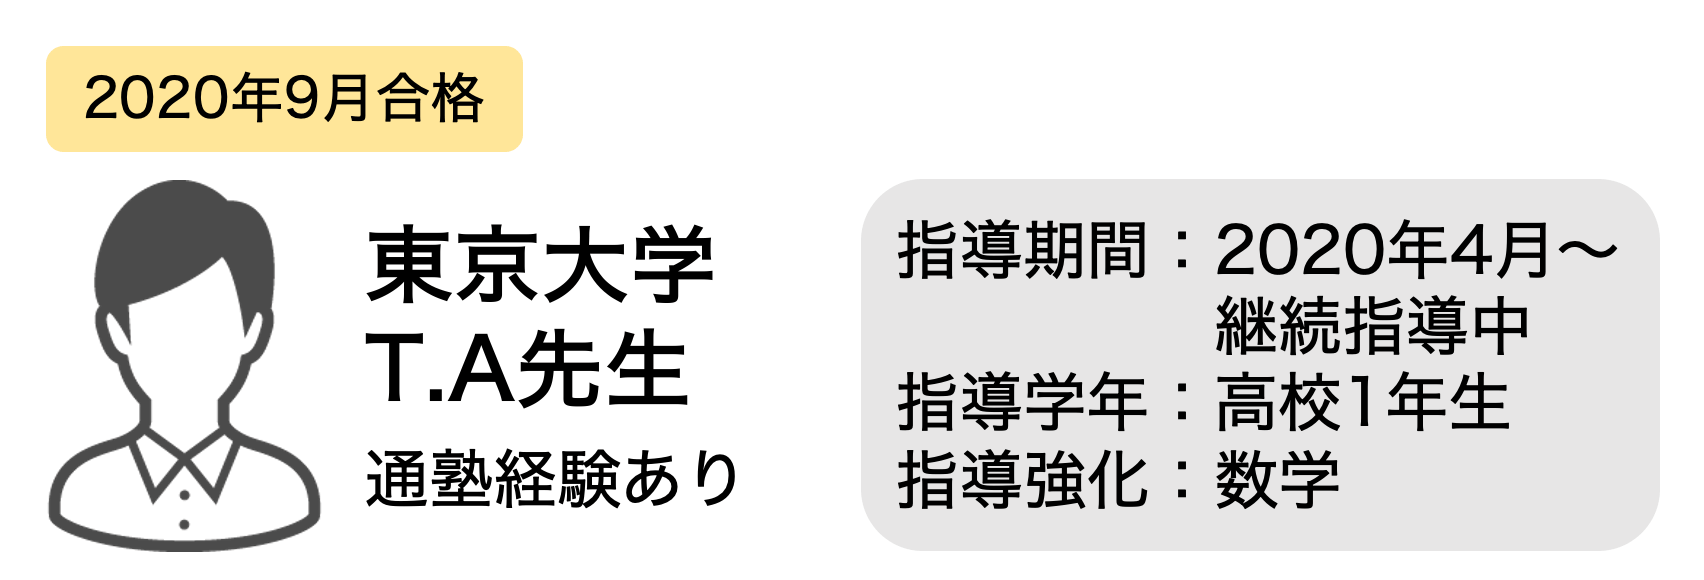 鉄緑会入塾テスト mobile1